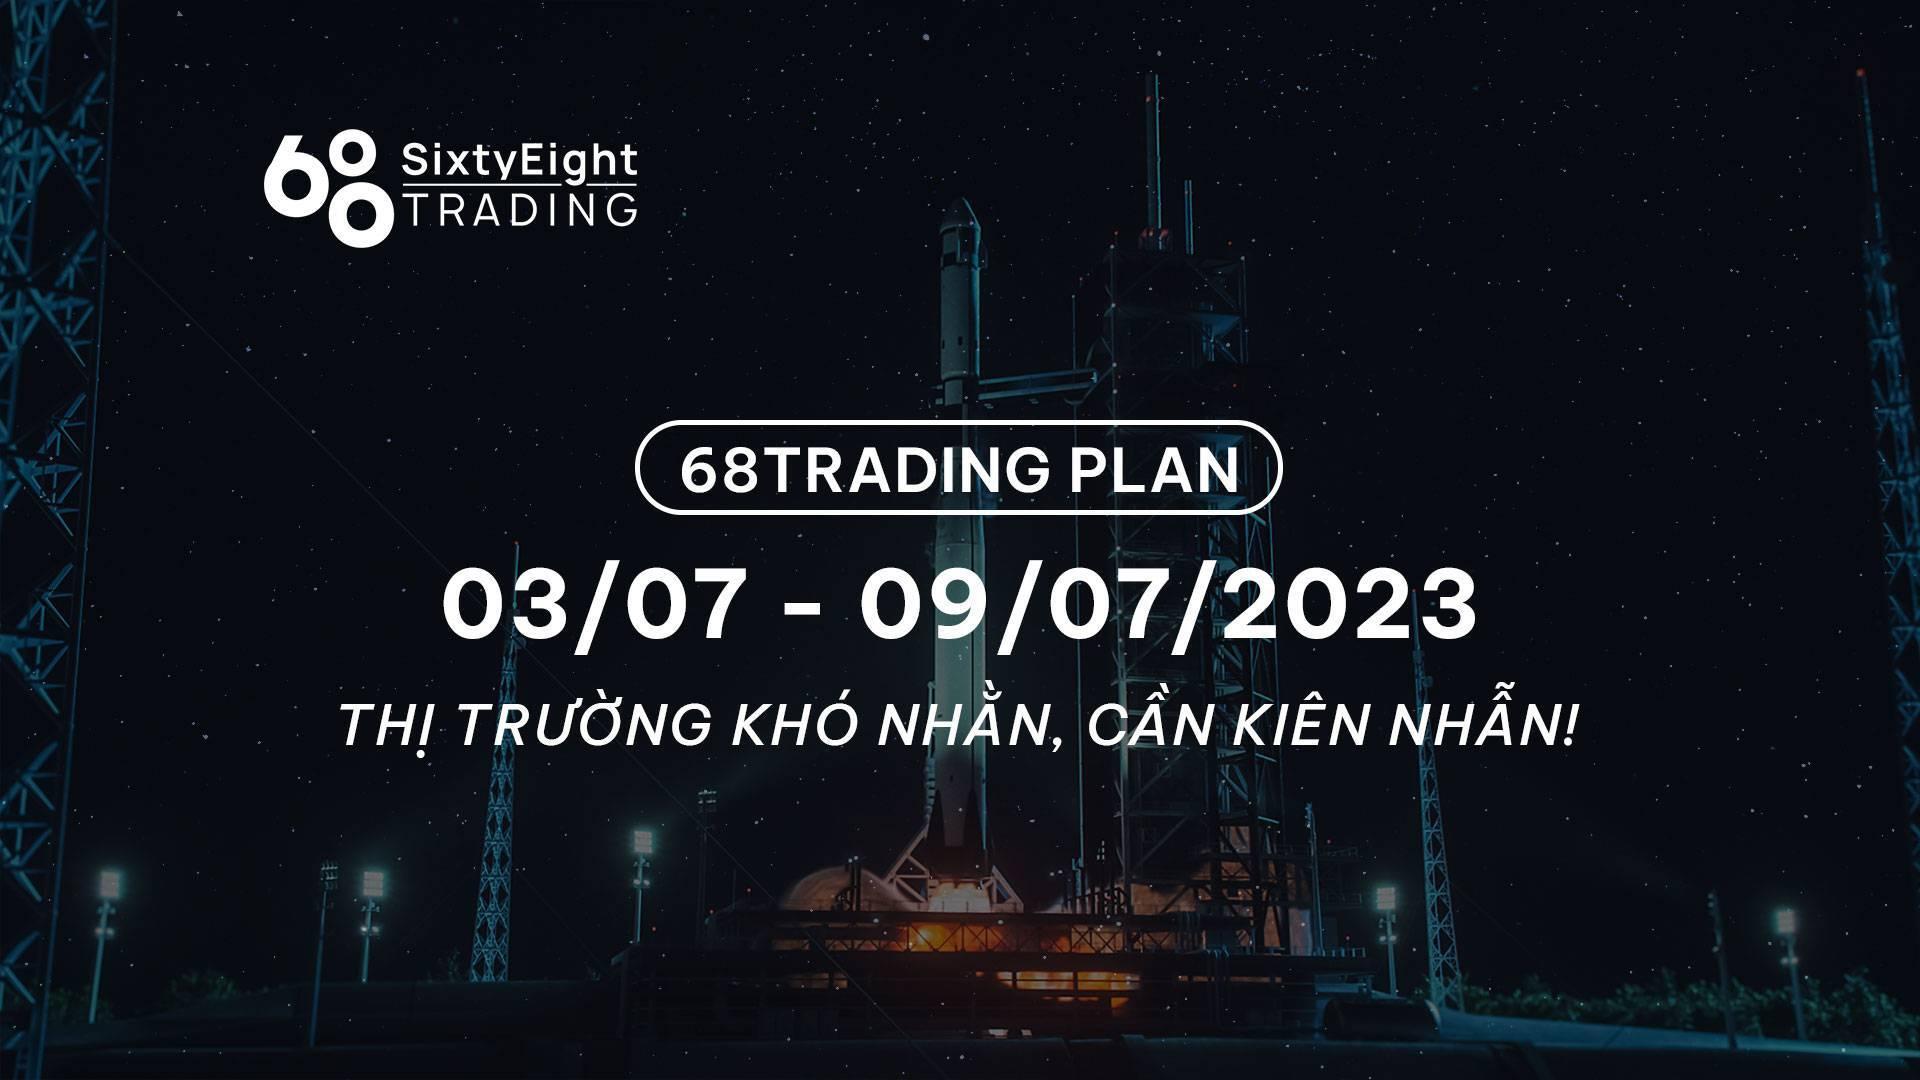 68-trading-plan-0307-09072023-thi-truong-kho-nhan-can-kien-nhan